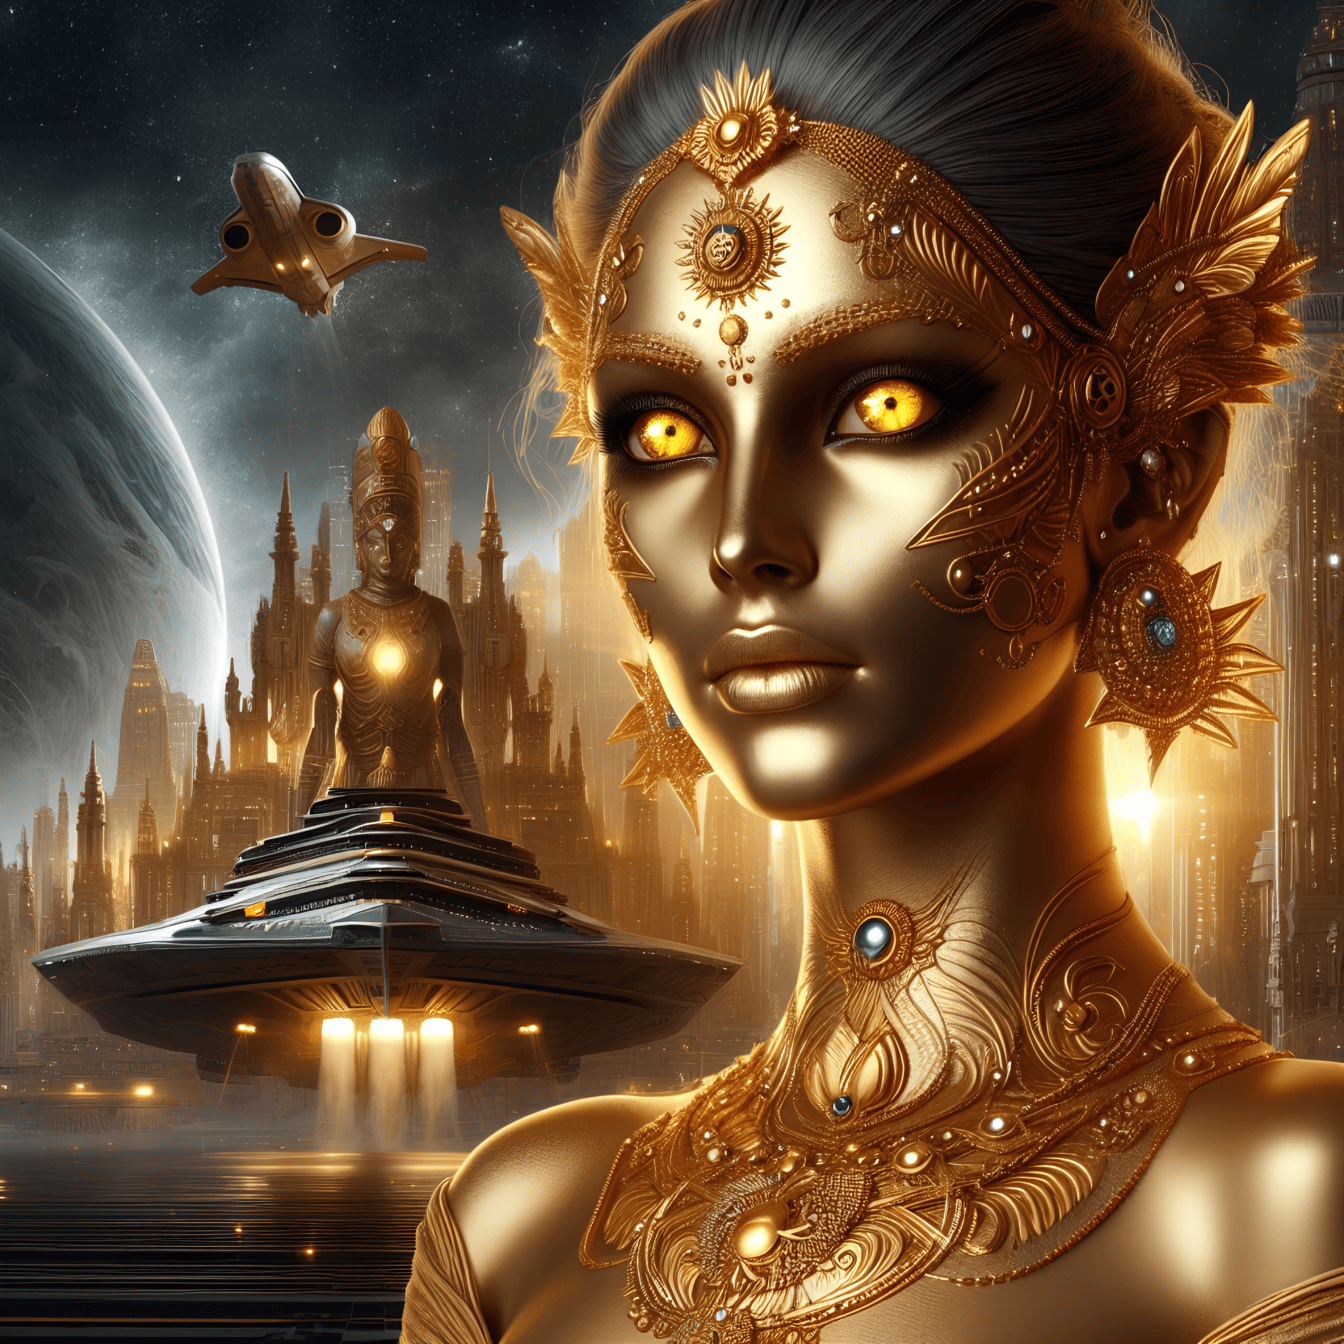 Retrato de um ser superior, uma deusa de origem alienígena vestindo uma roupa de ouro